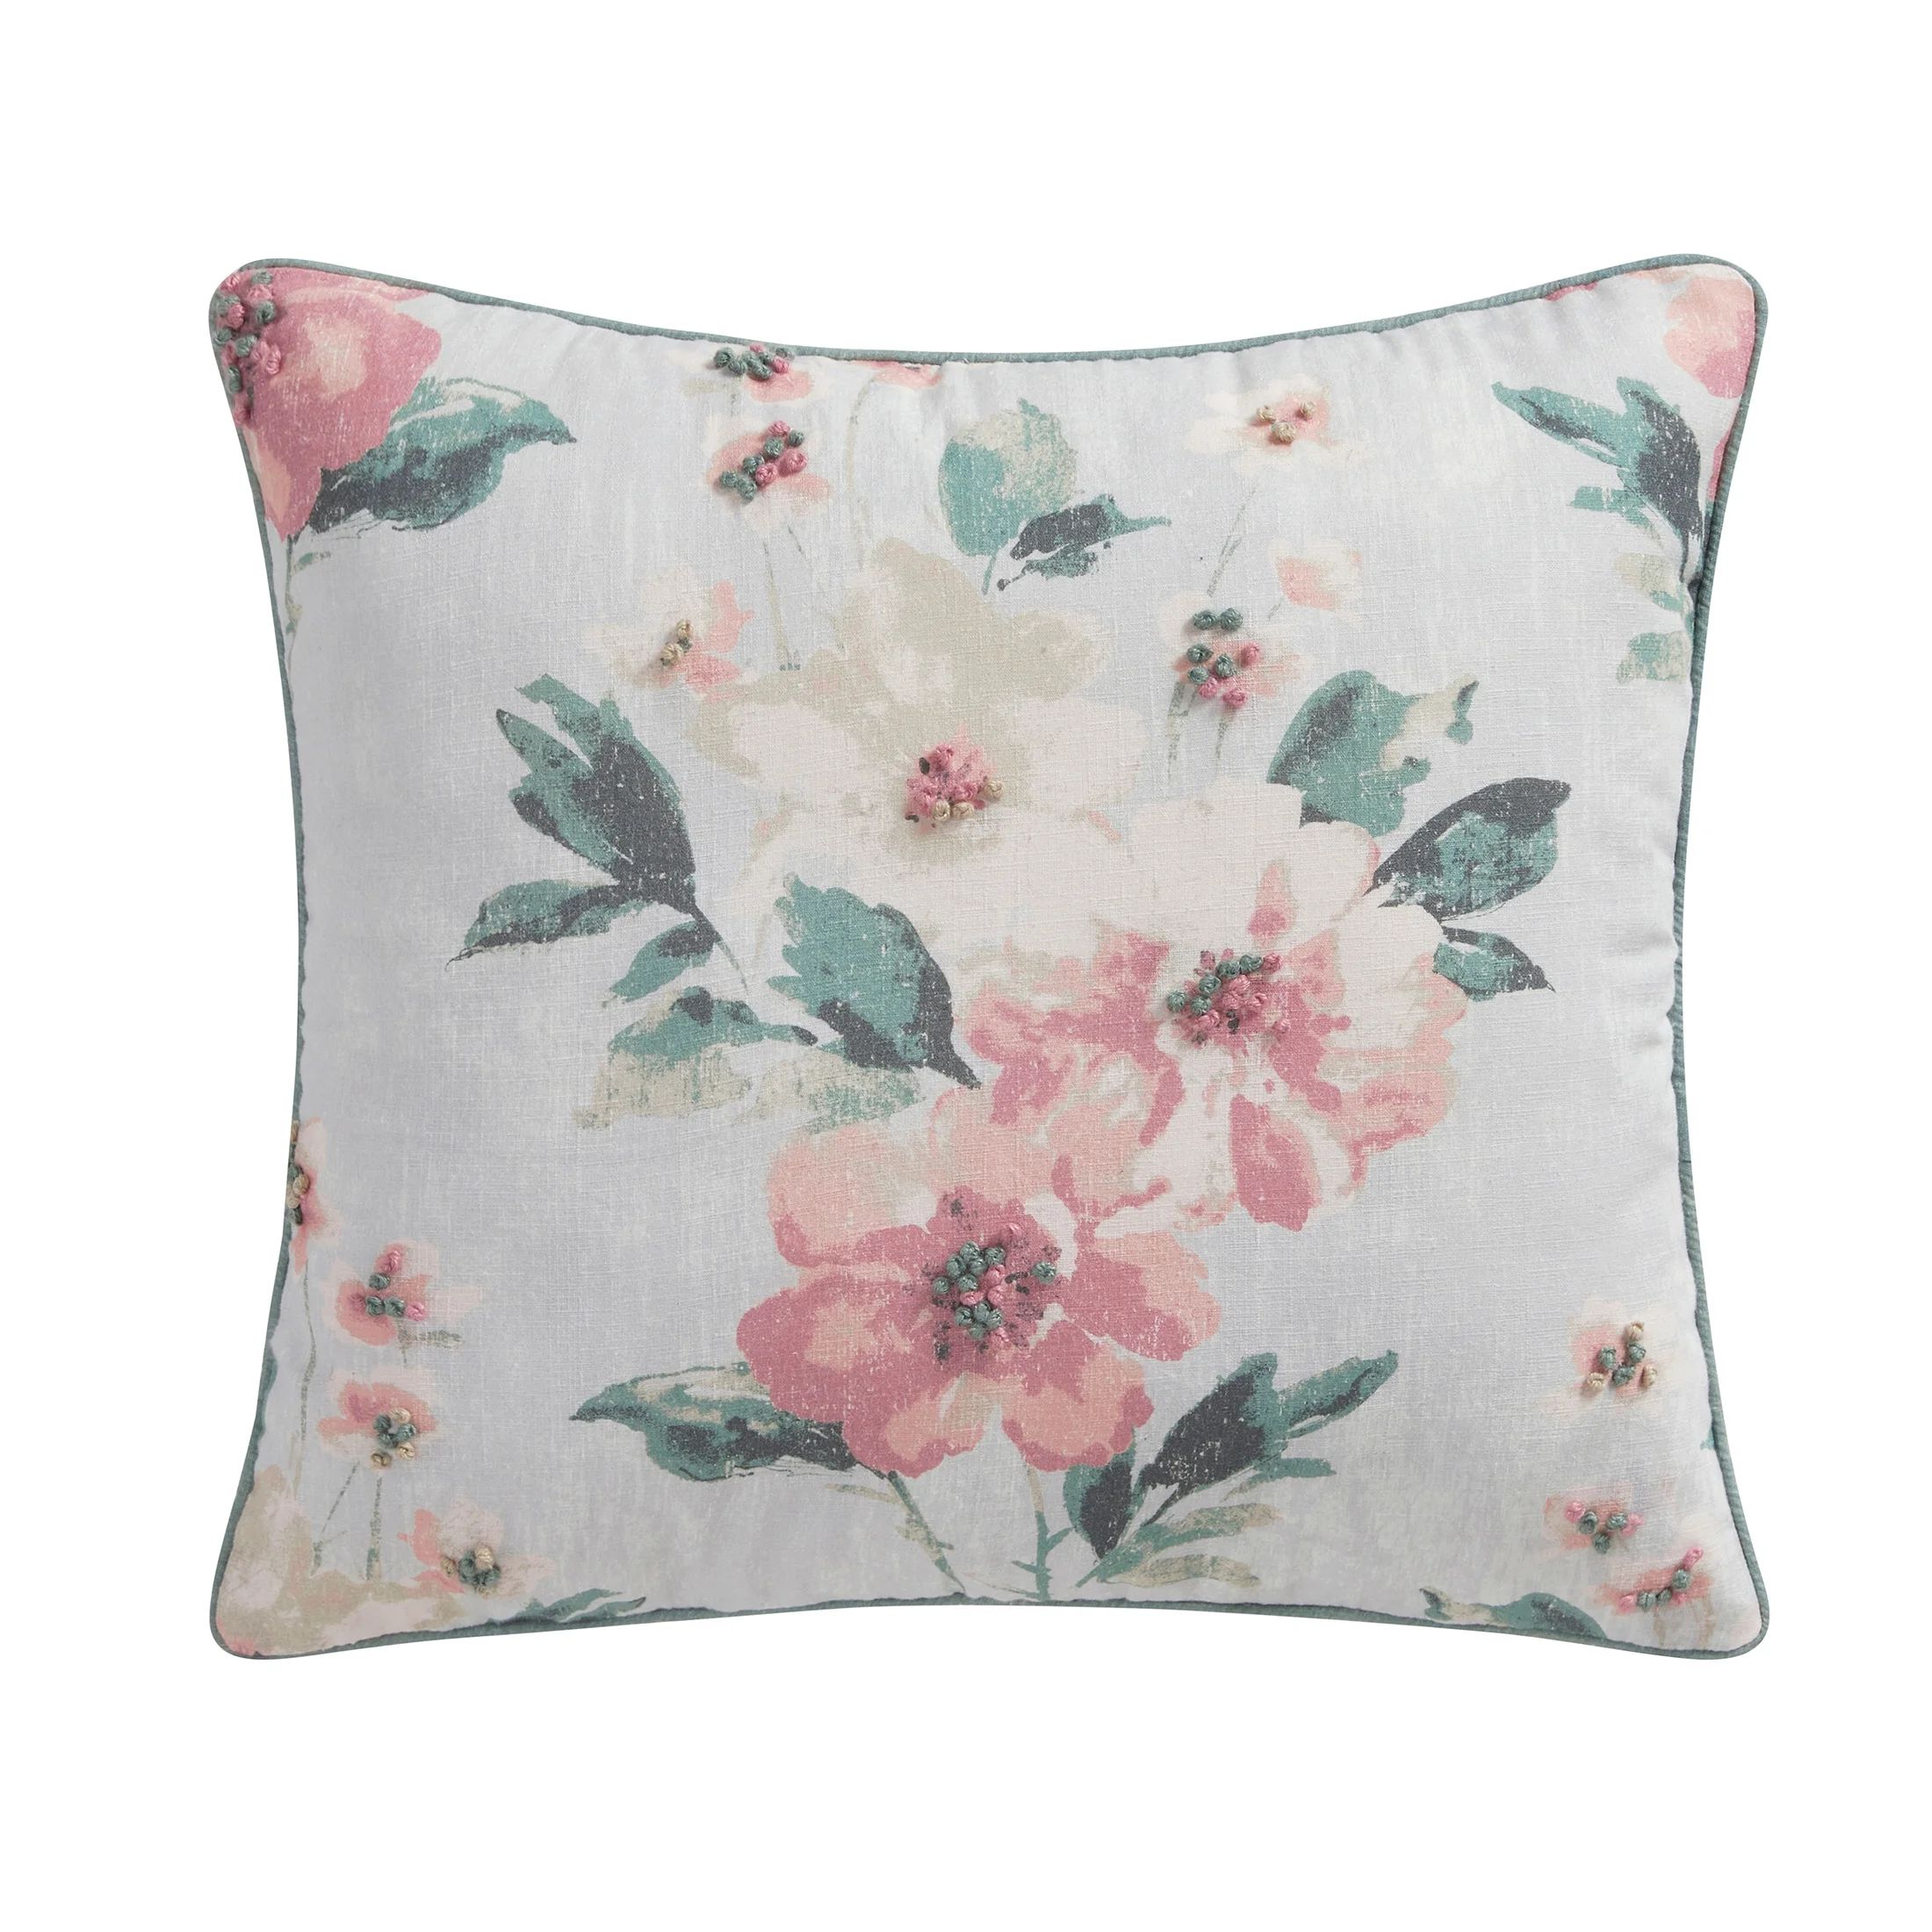 My Texas House Lisette 18" x 18" Multi-Color Floral Bunny Cotton Decorative Pillow | Walmart (US)